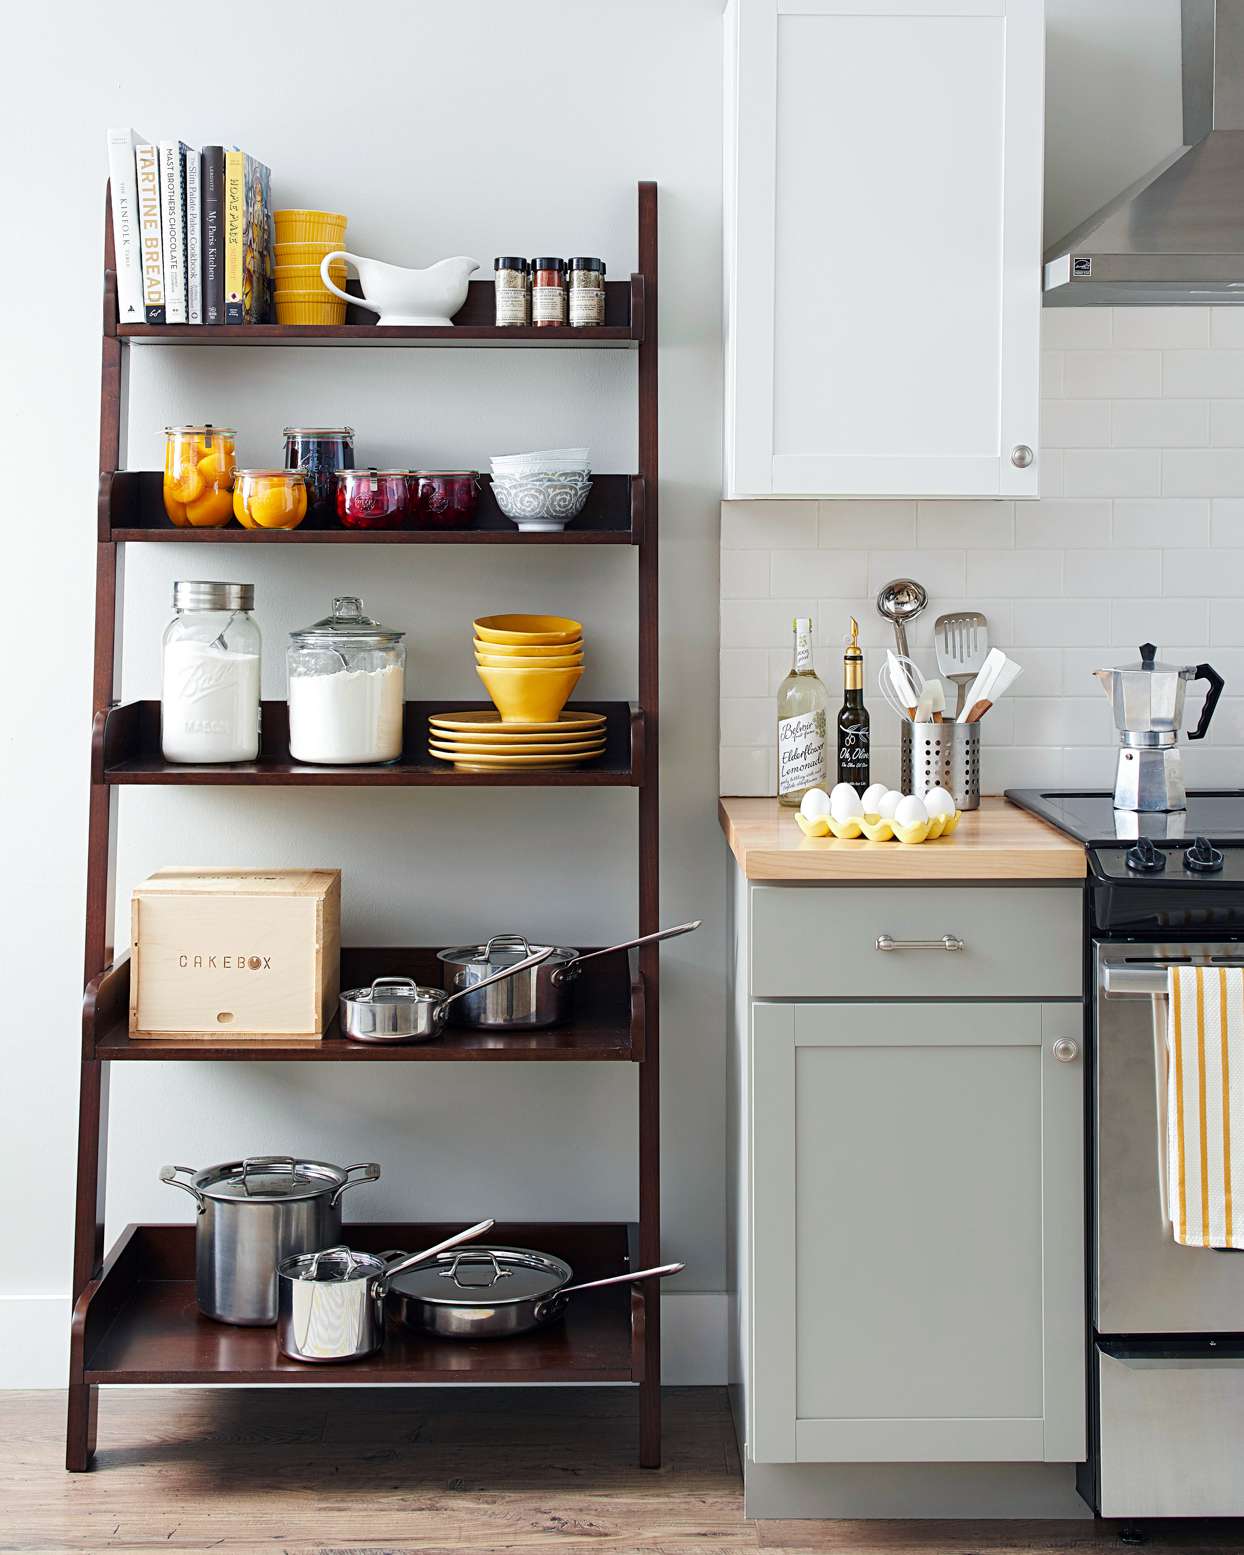 Black StoreMore Riser Adjustable Kitchen Shelf Organizer New in Box